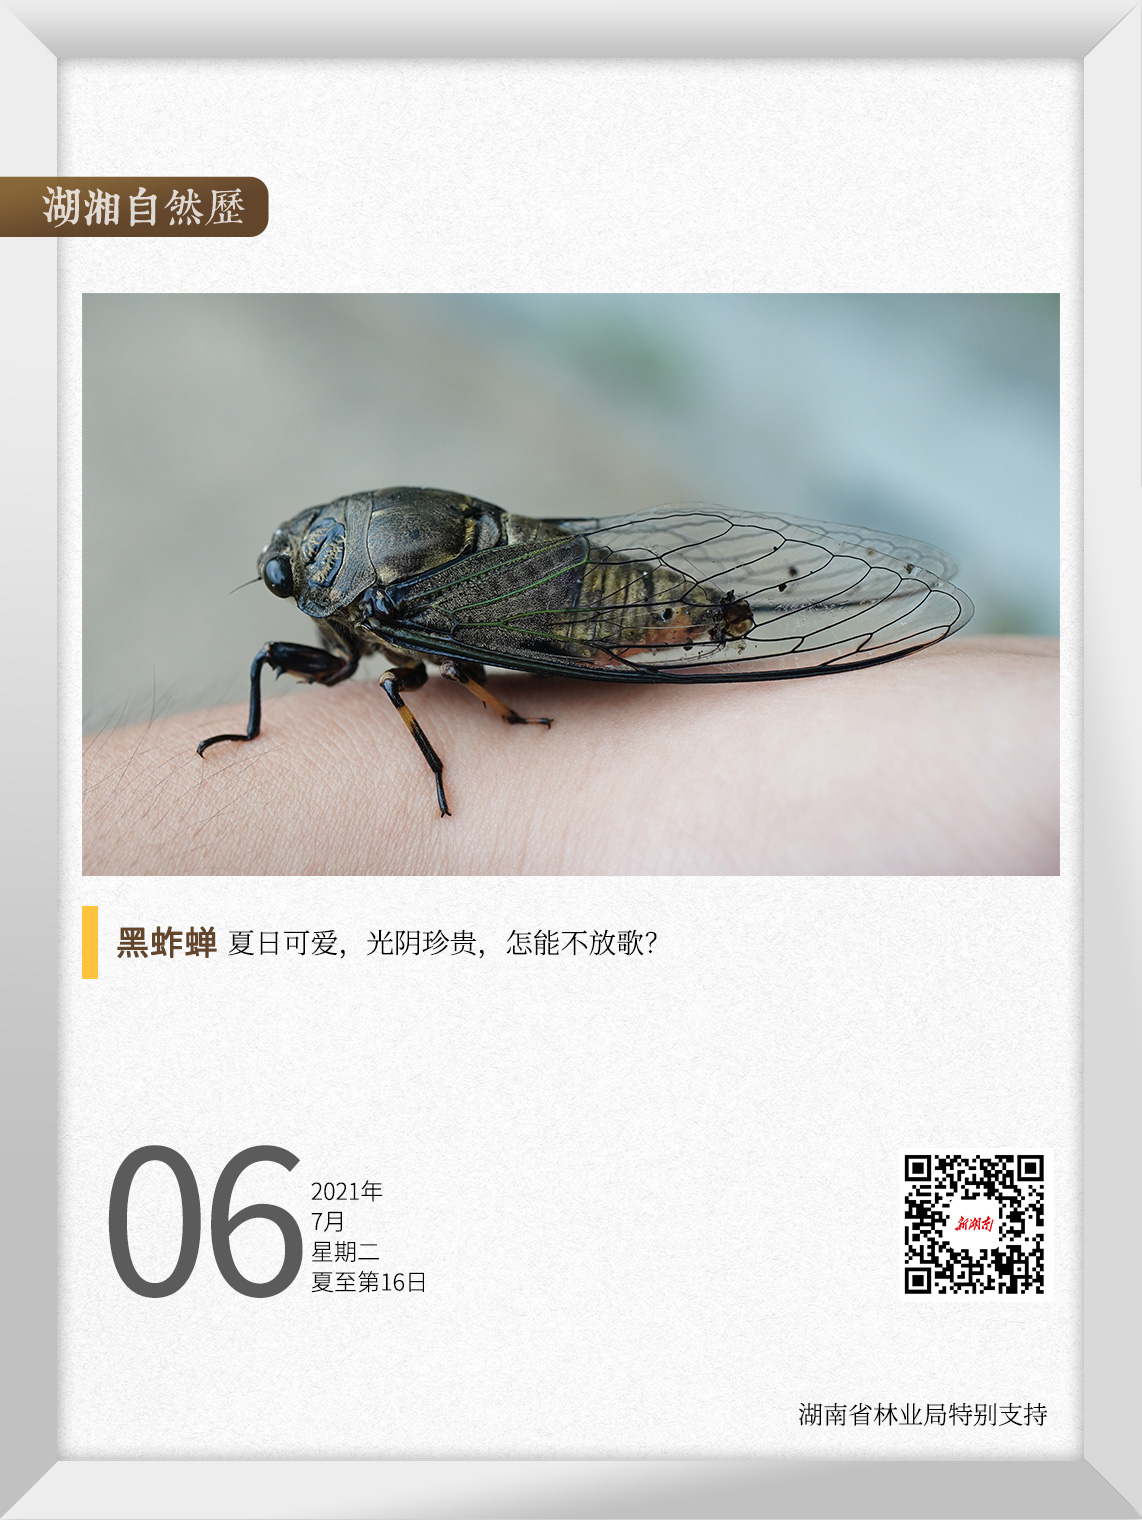 湖湘自然历丨夏日昆虫记①窗外的那一只蝉，让你想起了某个夏天 新湖南www.hunanabc.com